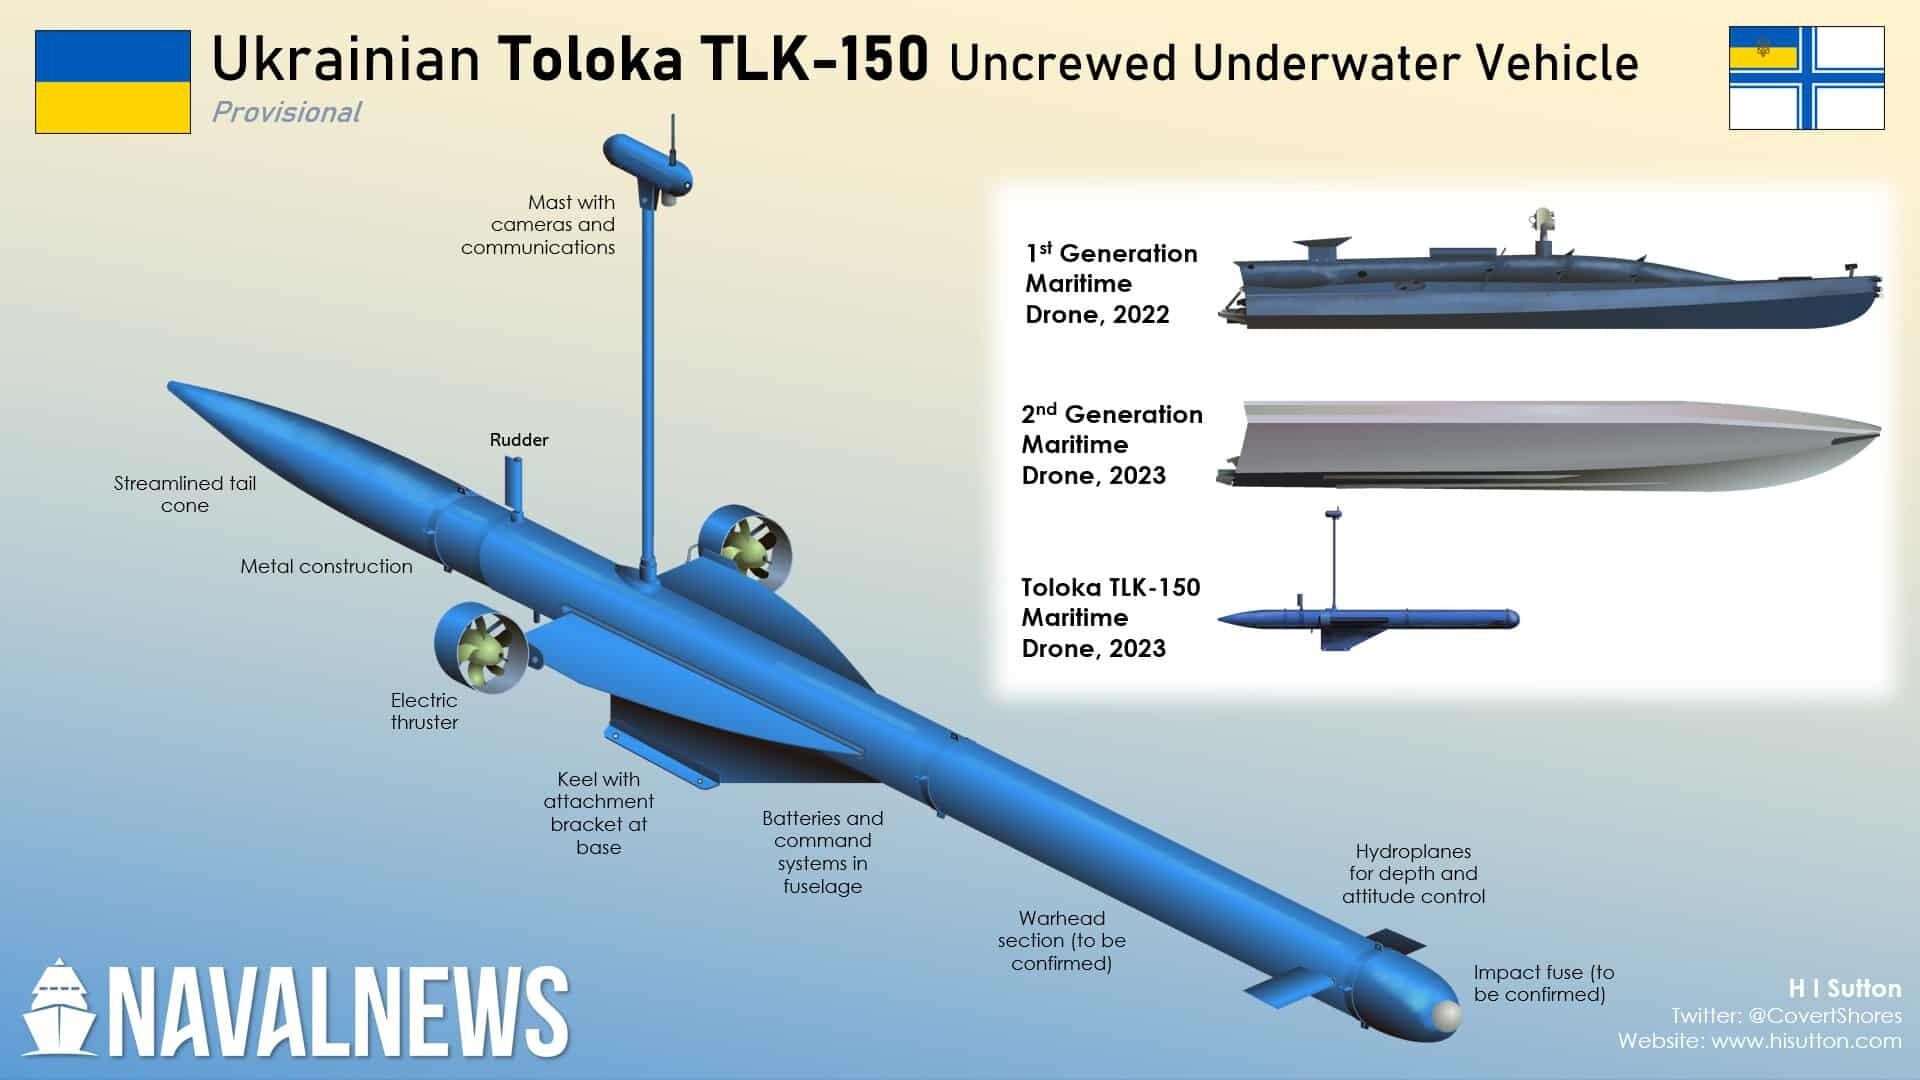 ukraine-toloka-tlk-150-maritime-drone.jpg